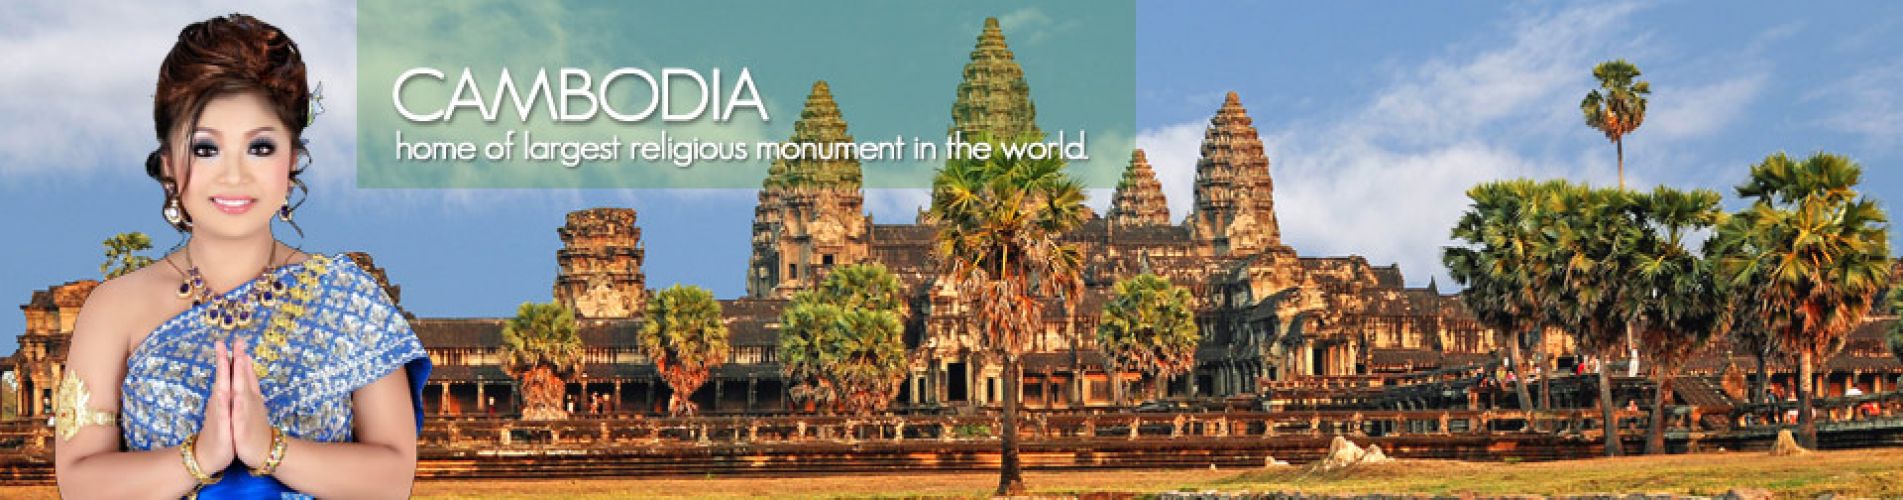 Các điểm du lịch tại Campuchia